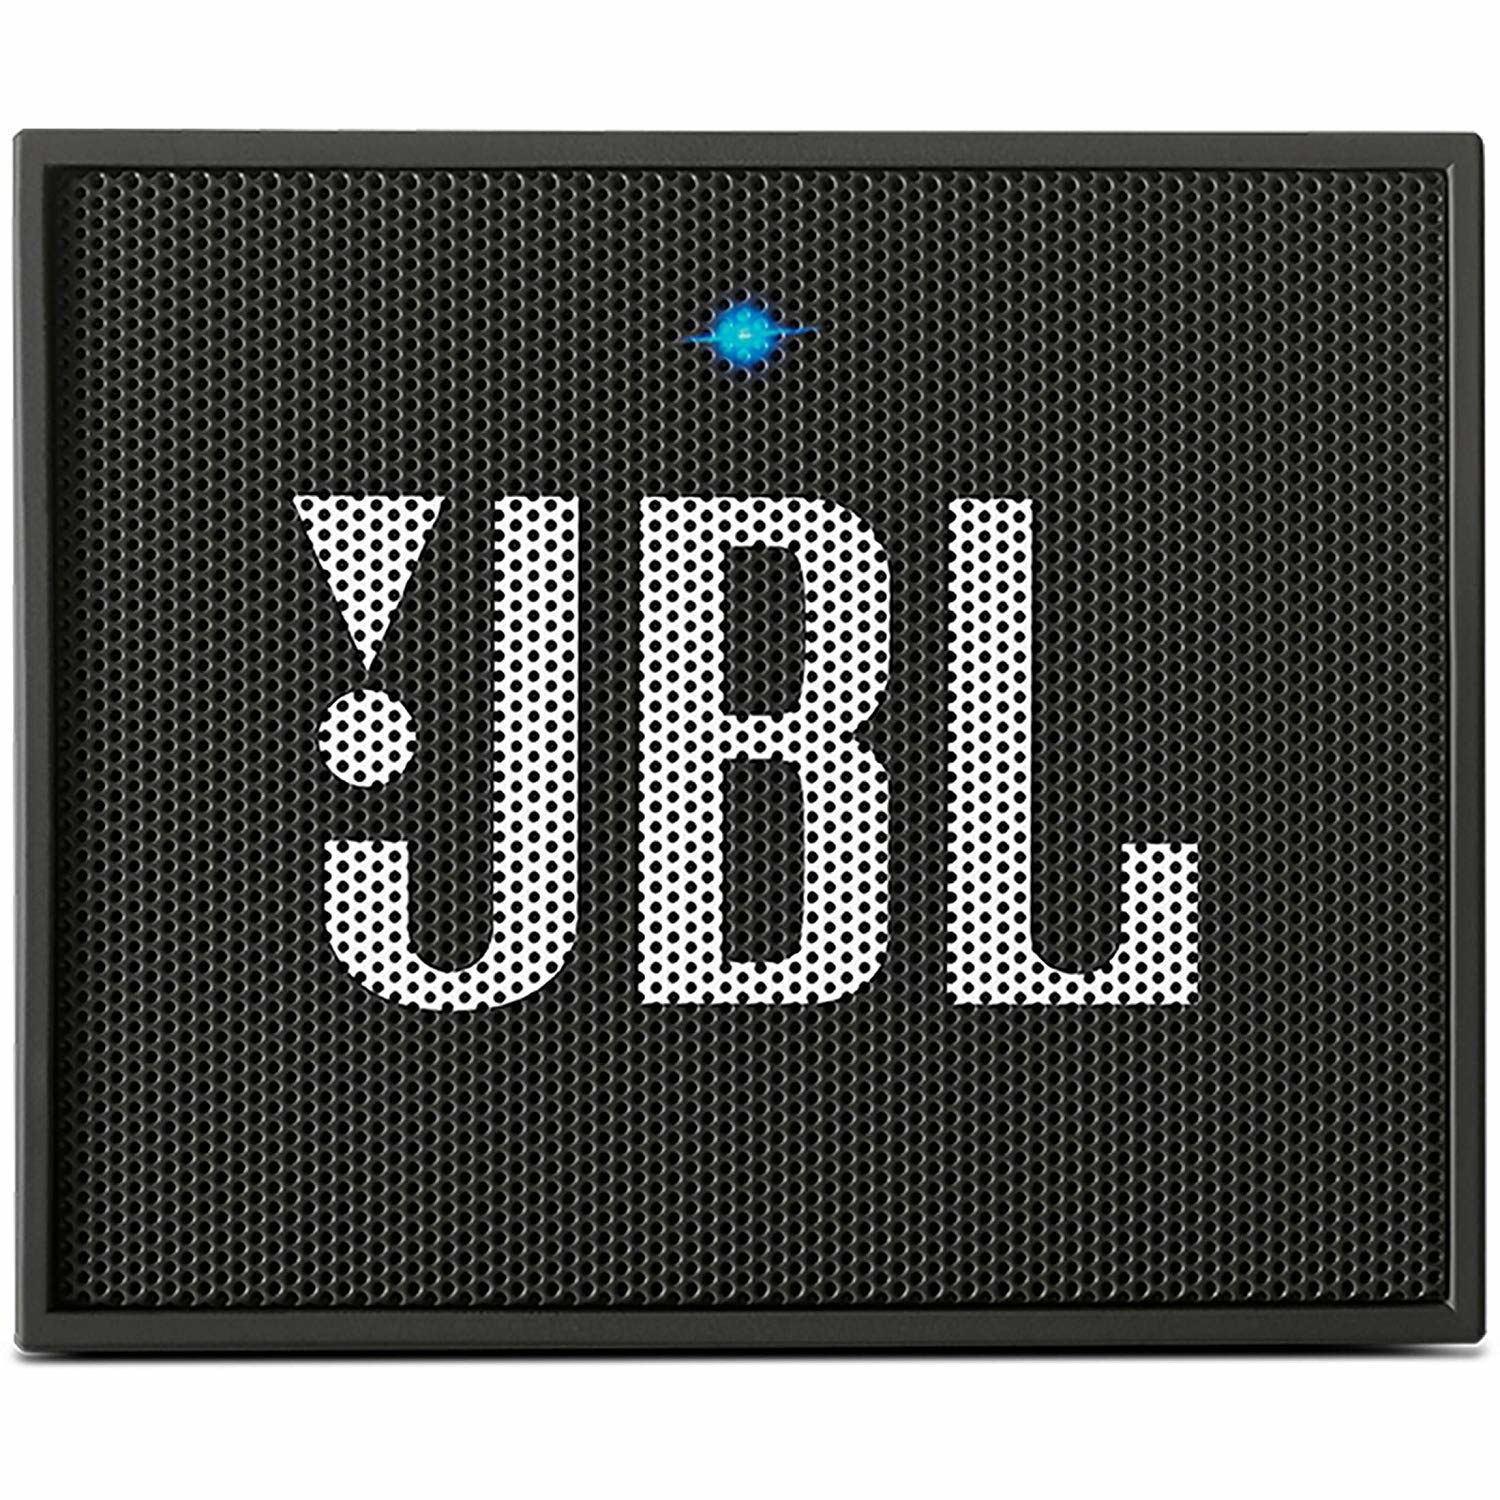 A black JBL GO portable speaker